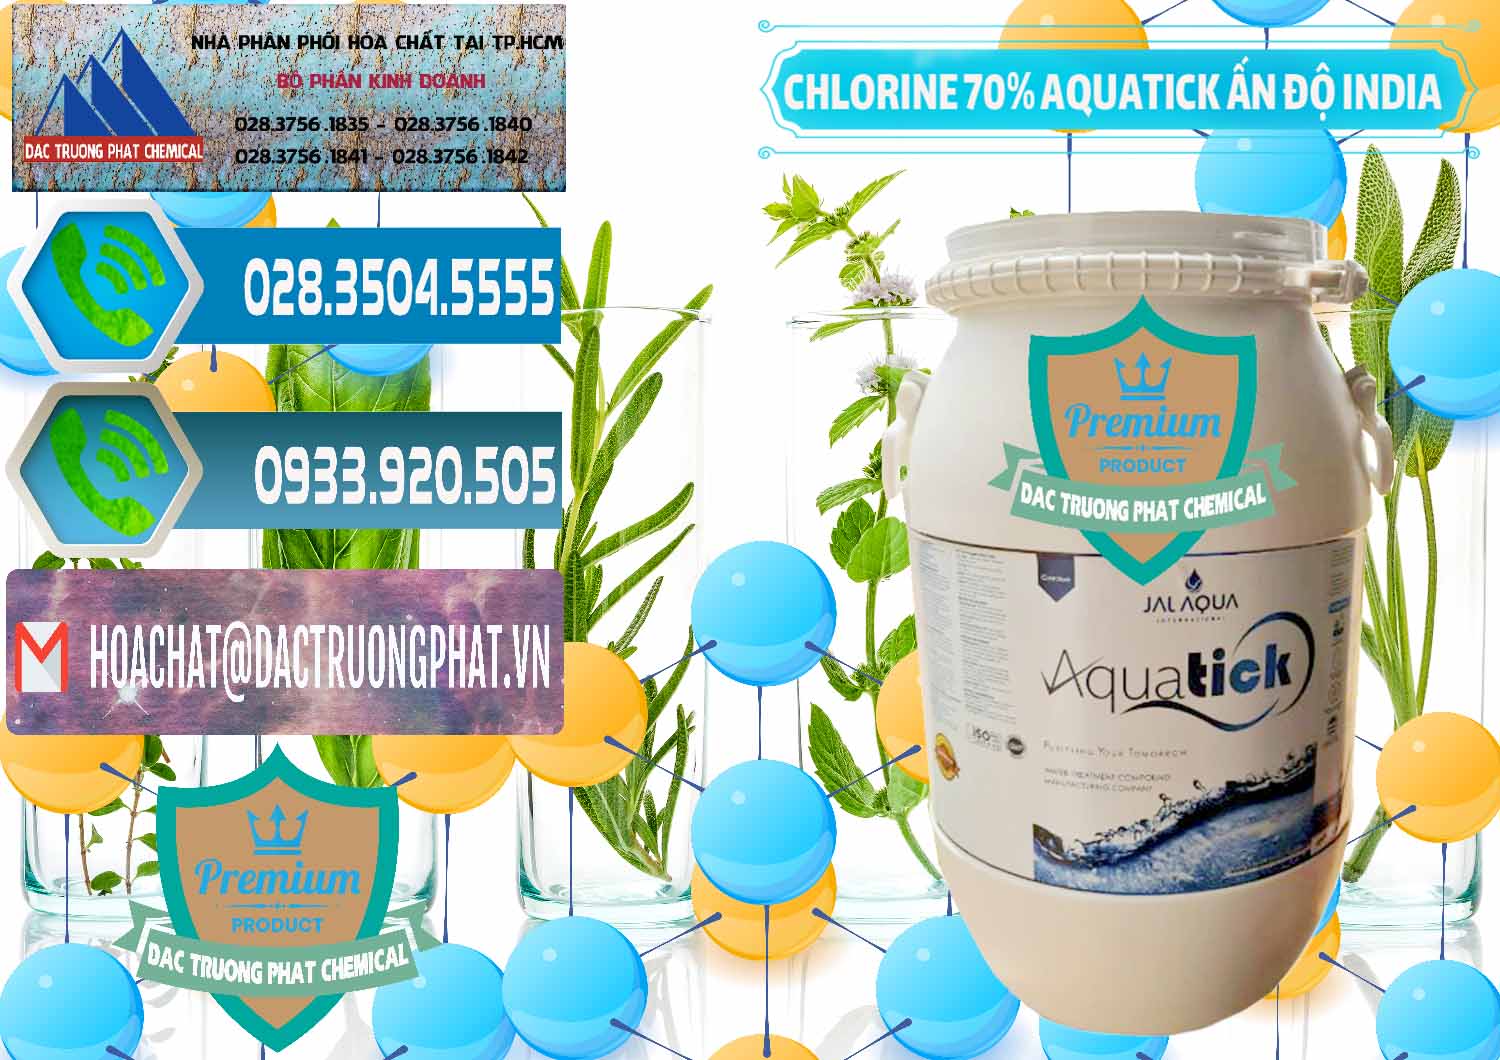 Cty chuyên bán và cung cấp Chlorine – Clorin 70% Aquatick Jal Aqua Ấn Độ India - 0215 - Công ty chuyên phân phối và bán hóa chất tại TP.HCM - congtyhoachat.net